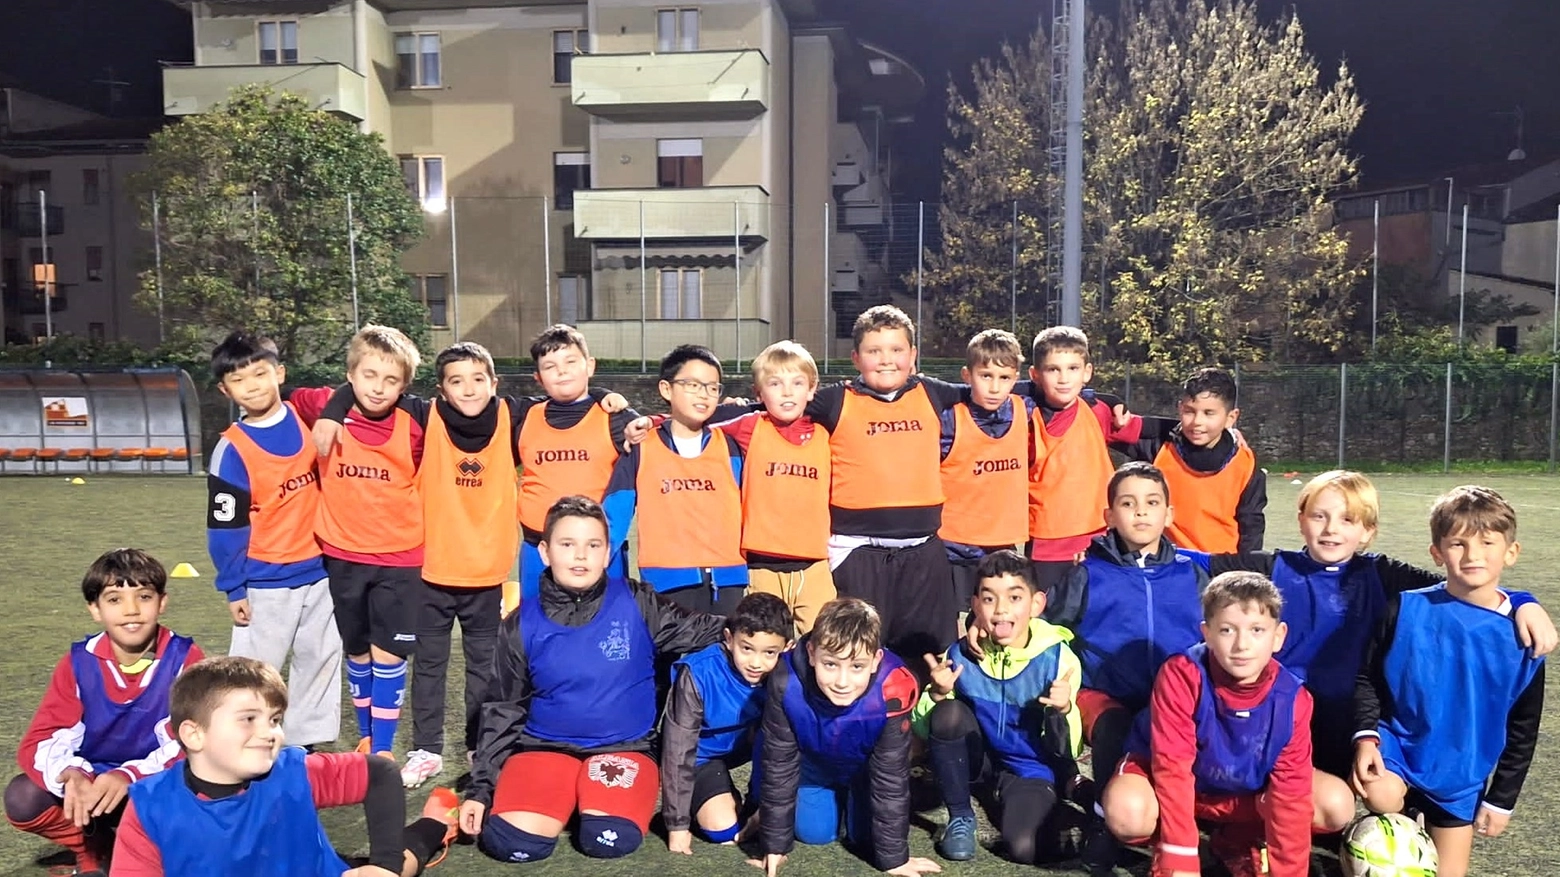 La squadra dei ragazzi classi 2014-15 del Gruppo Sportivo Avanguardia 1953